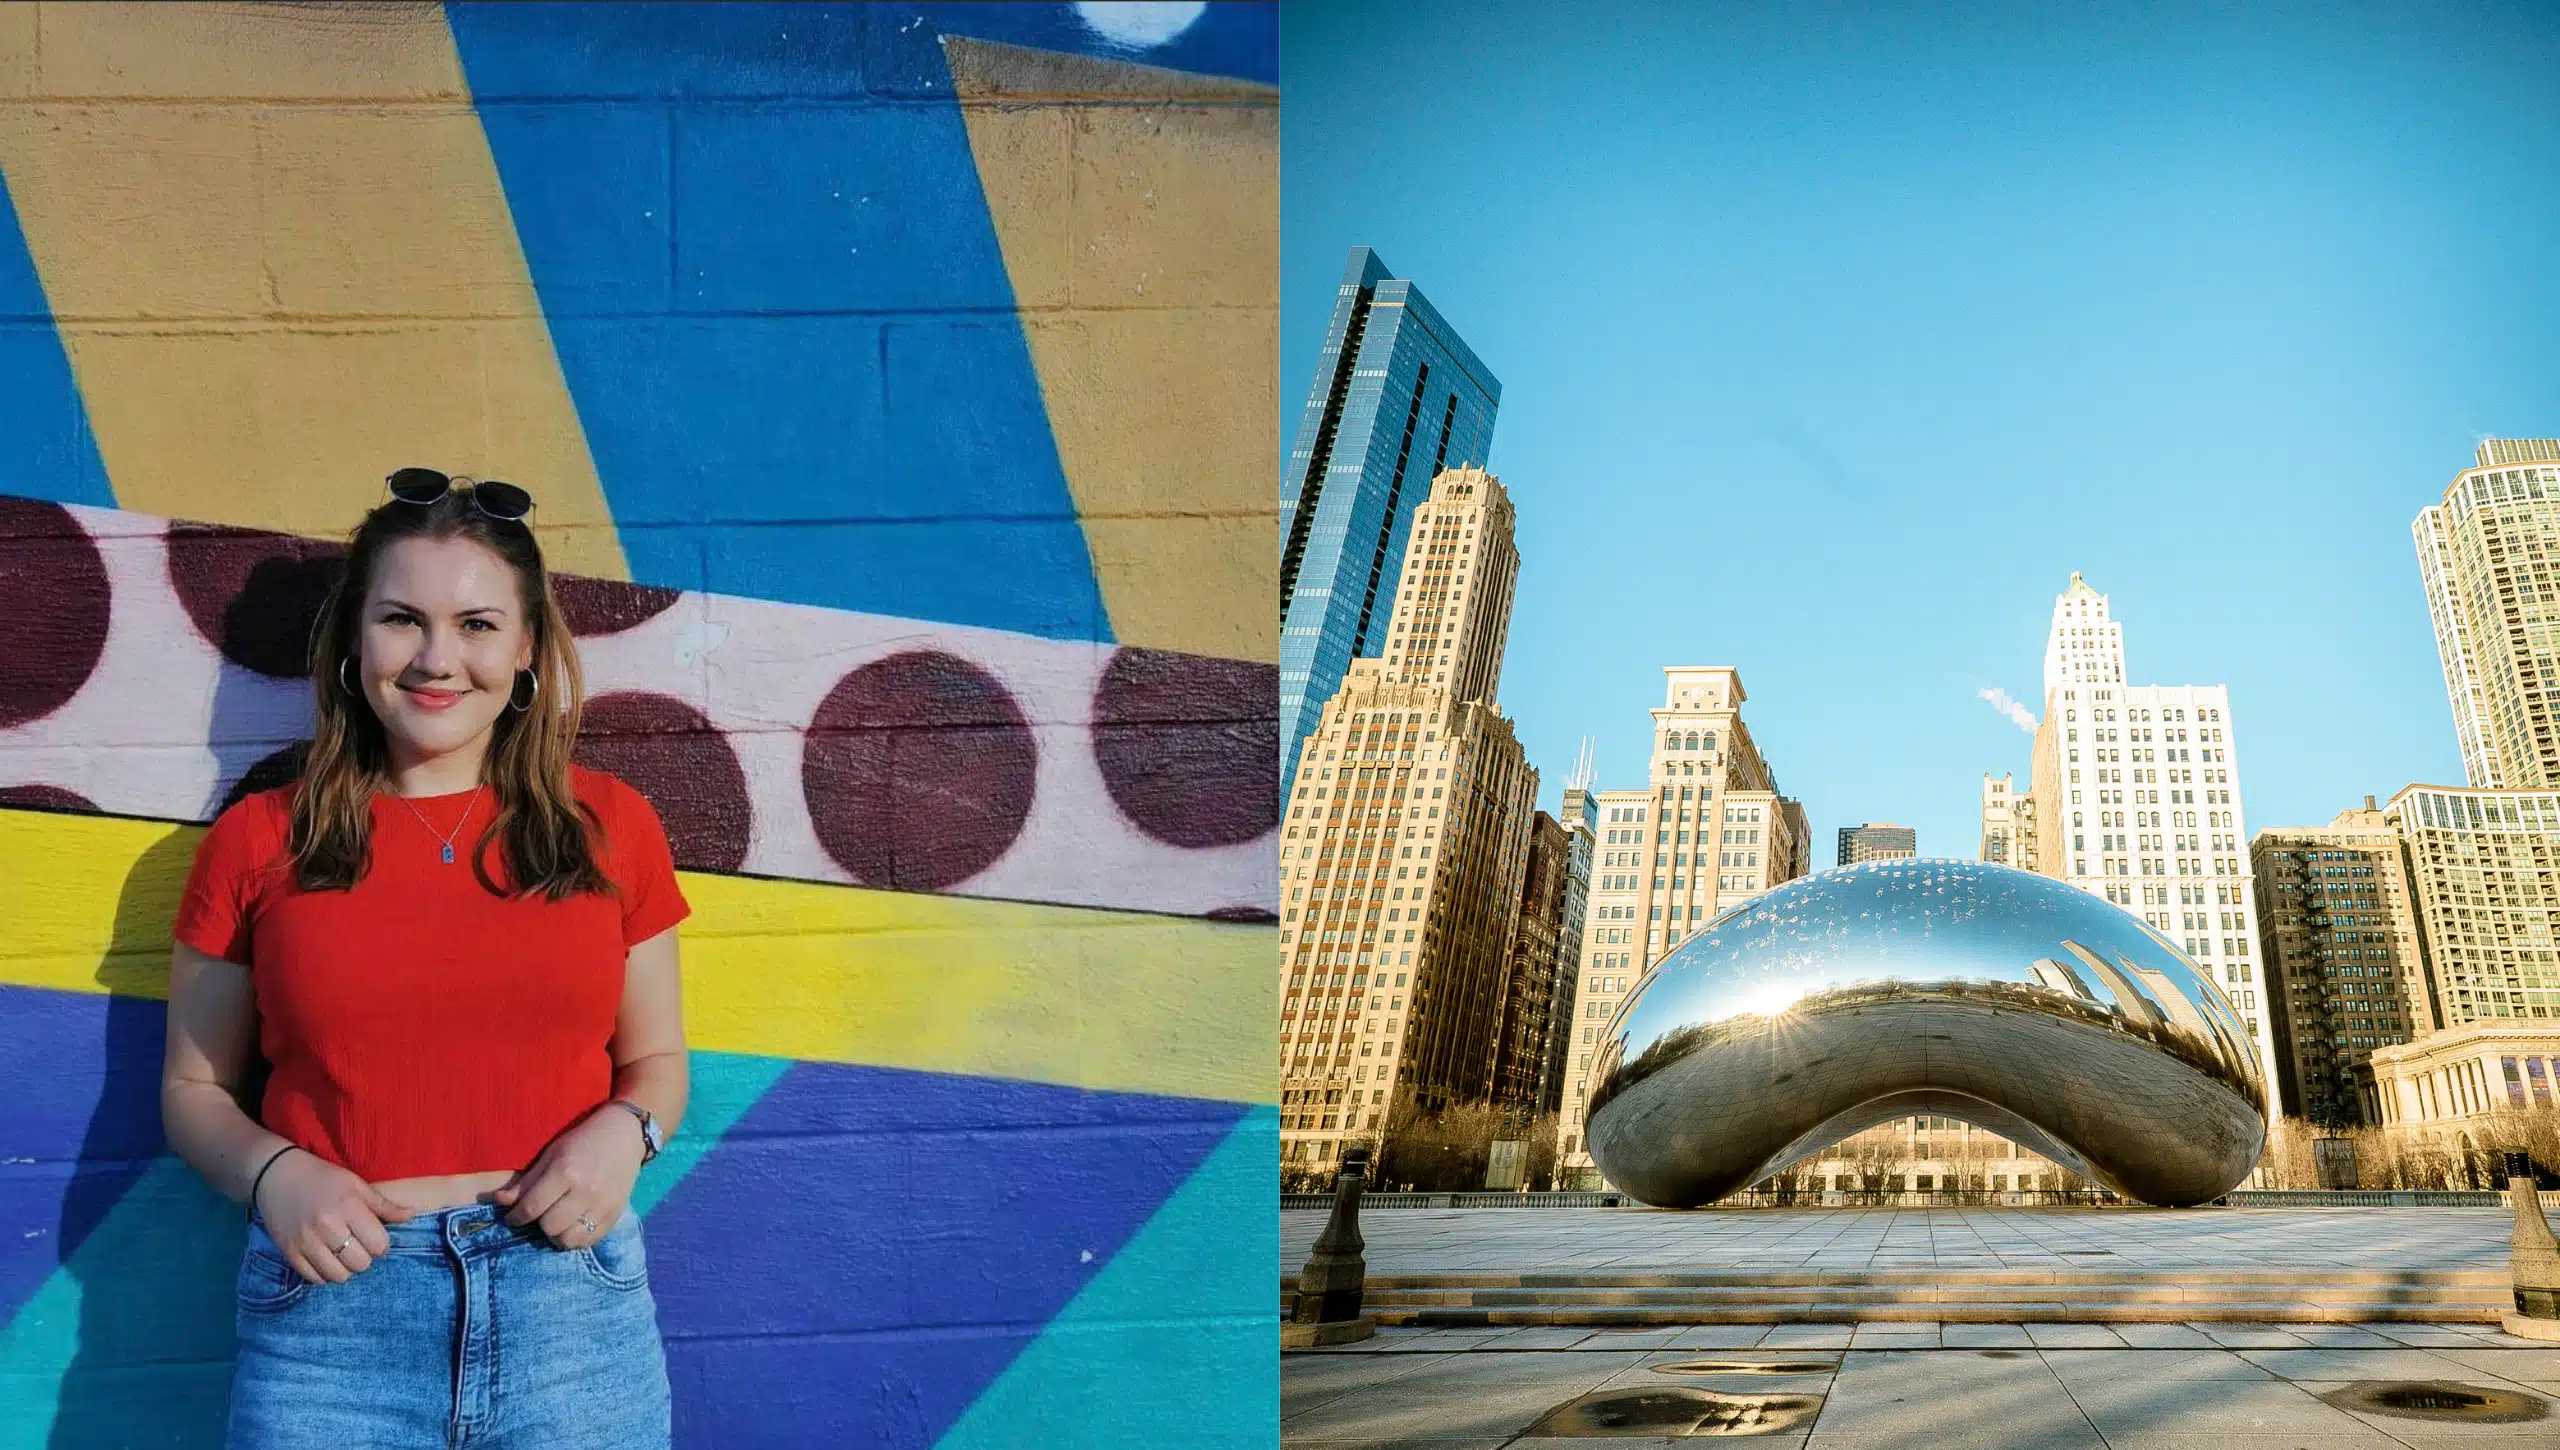 Links eine Frau vor einer bemalten Wand, Rechts die Skulptur "Cloud Gate" in Chicago